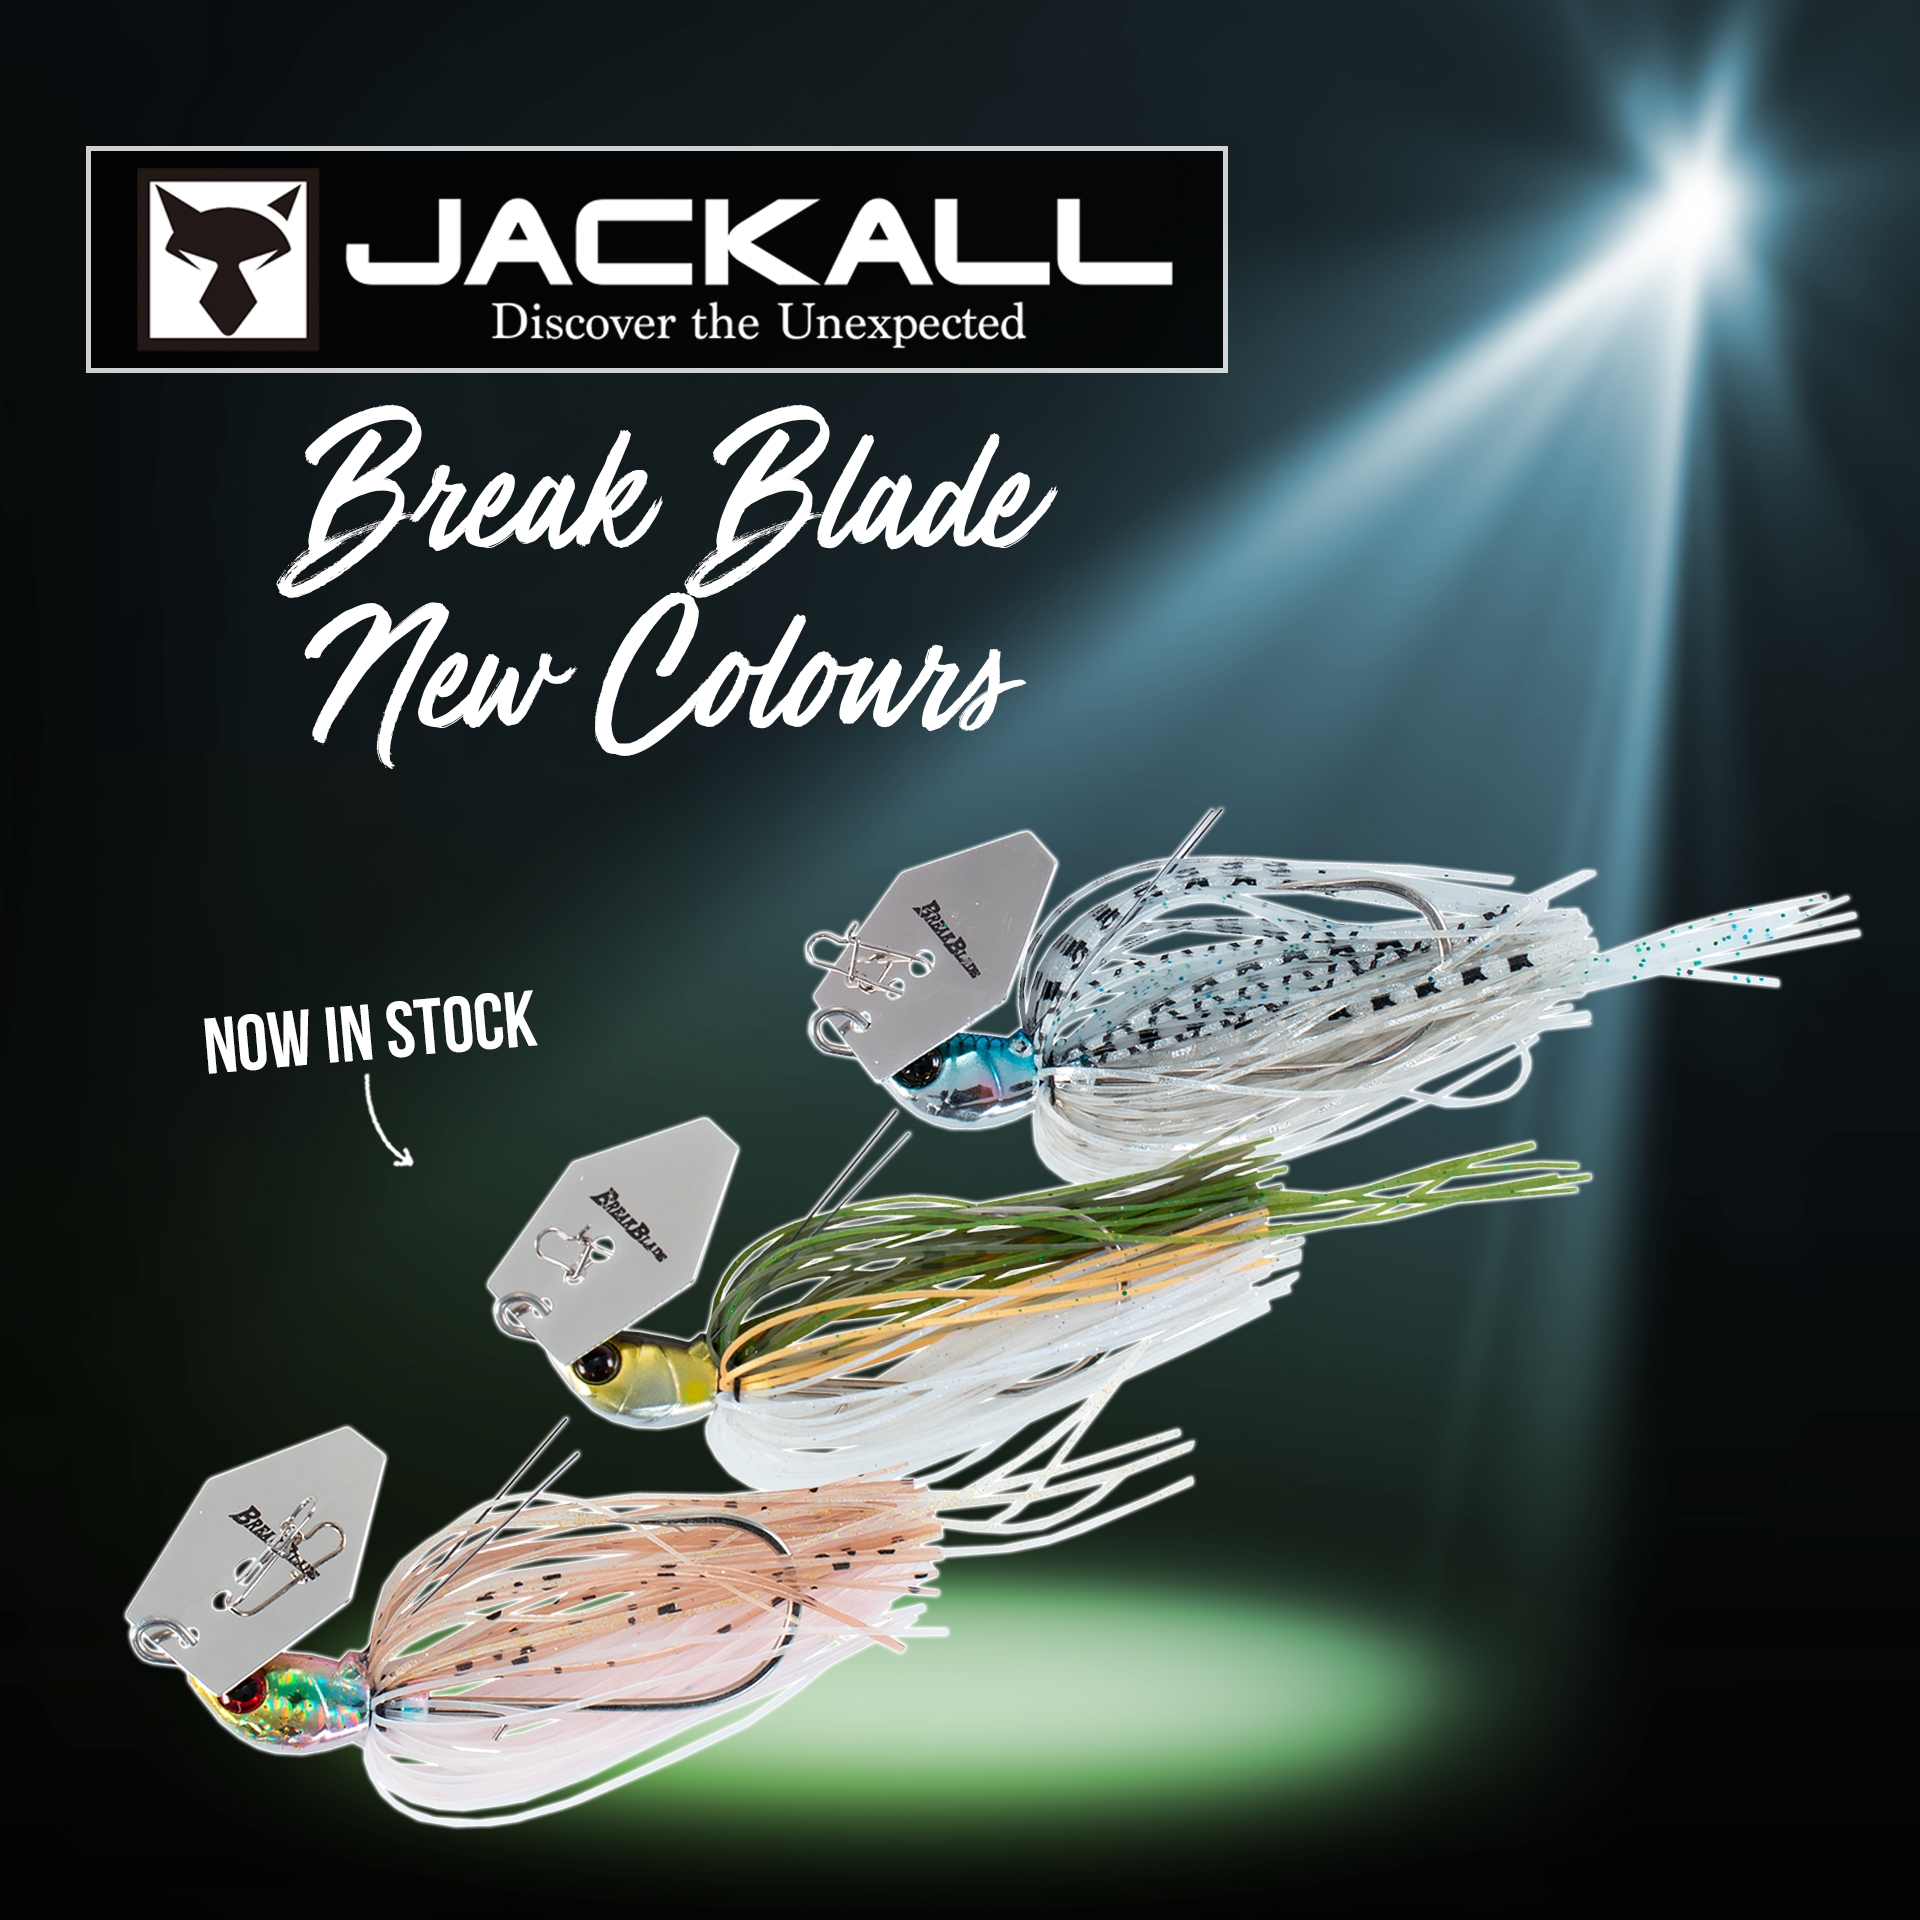 New Colours - JACKALL BREAK BLADE CHATTERBAIT